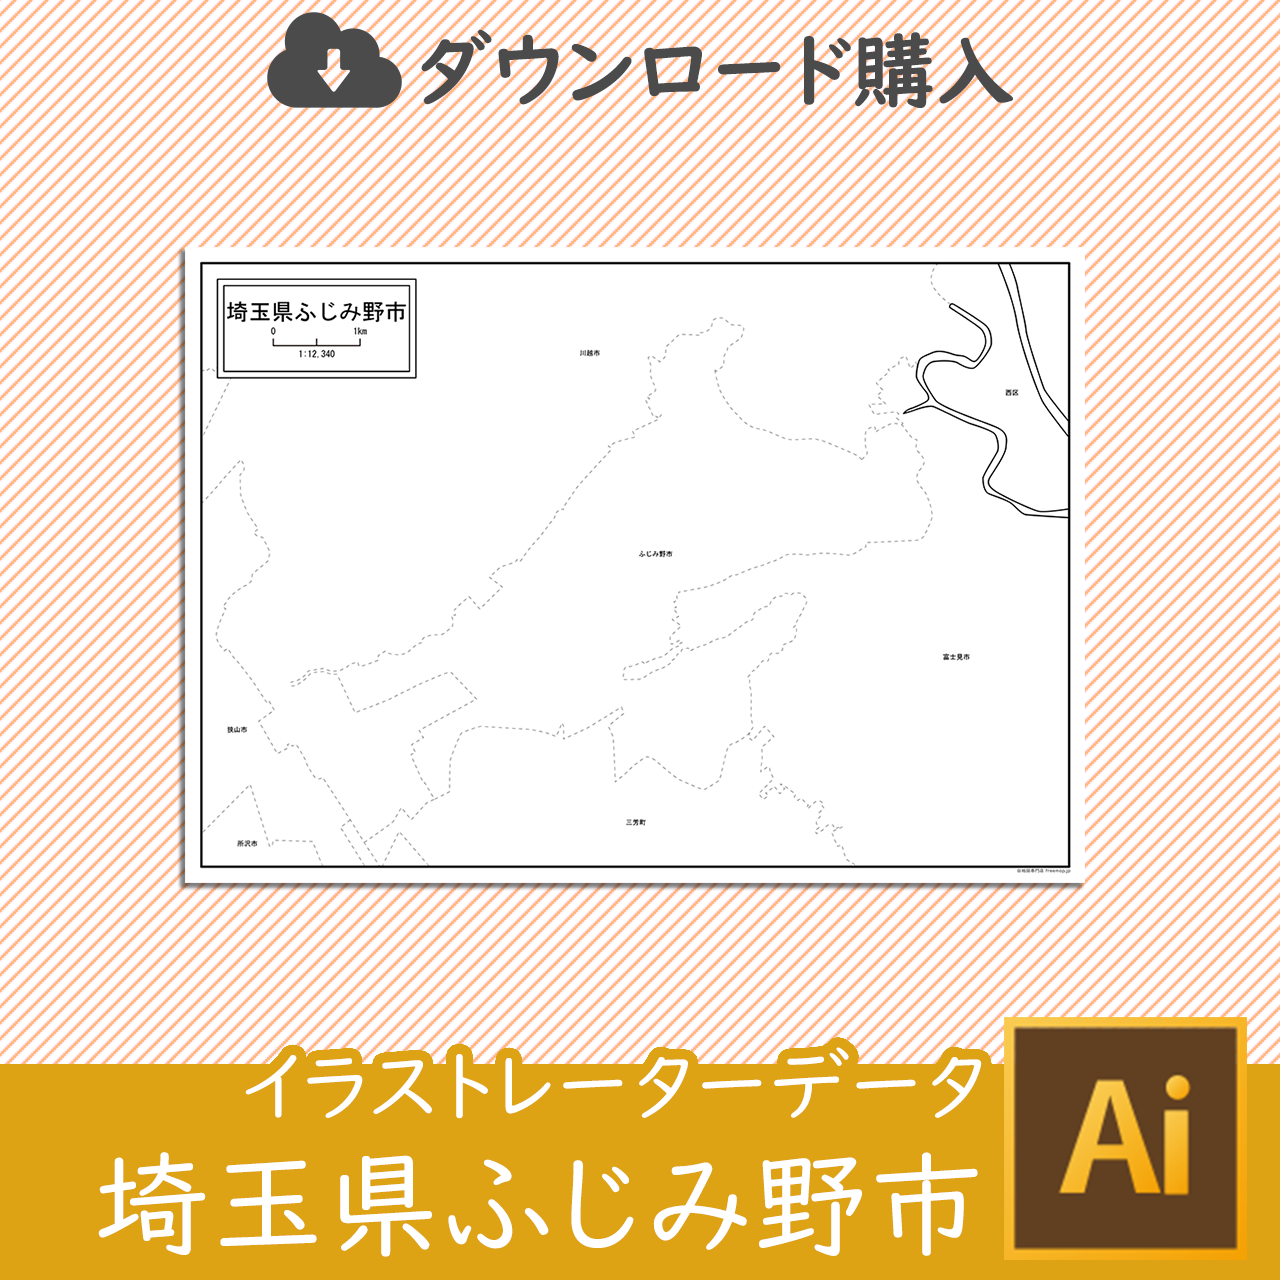 ふじみ野市のaiデータのサムネイル画像